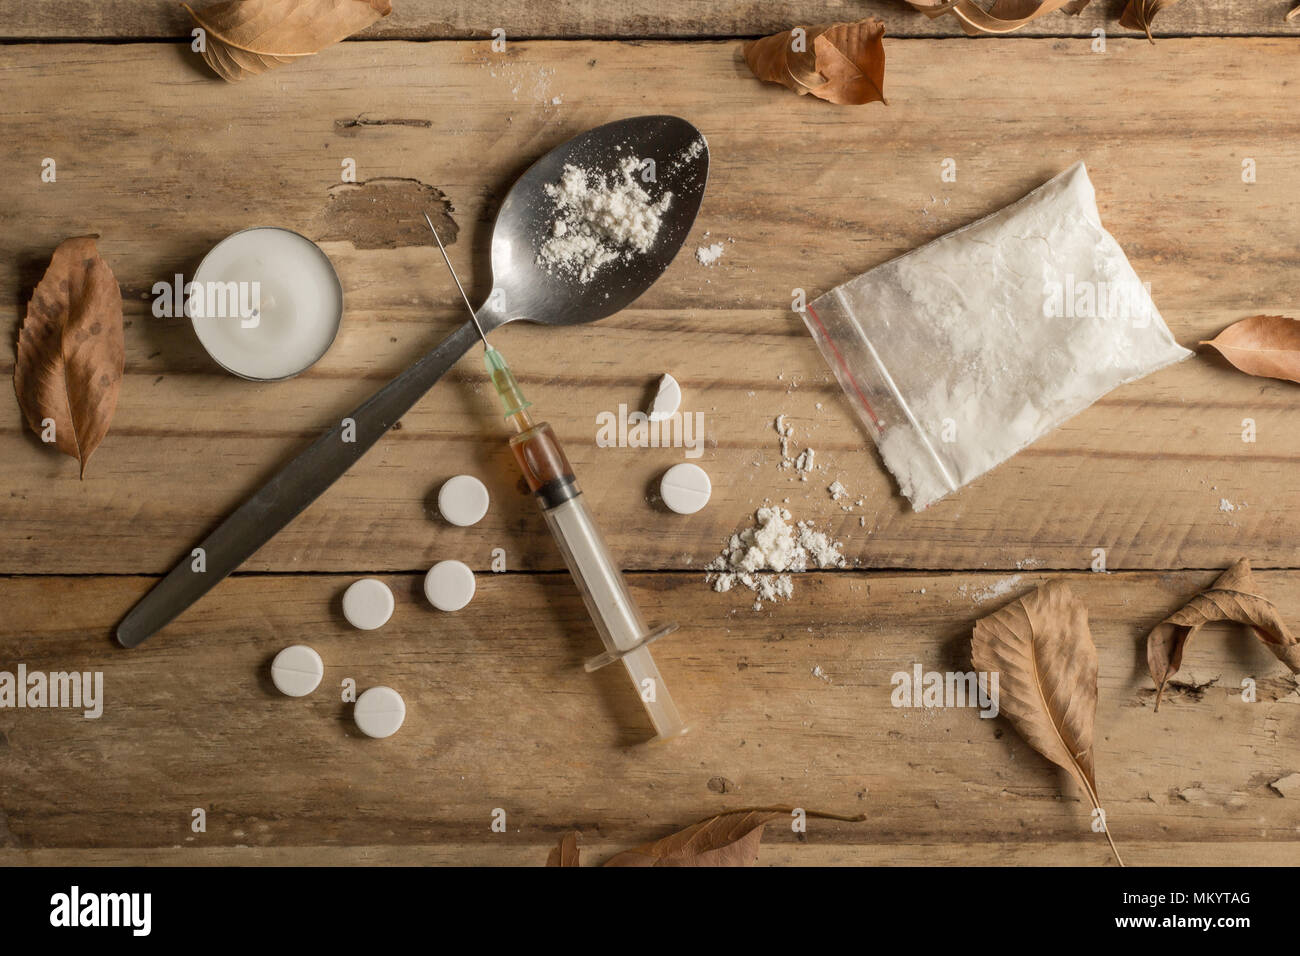 La toxicomanie texture de fond en bois rustique, des objets avec des feuilles d'automne séchées - conceptuelles haut voir photo Banque D'Images